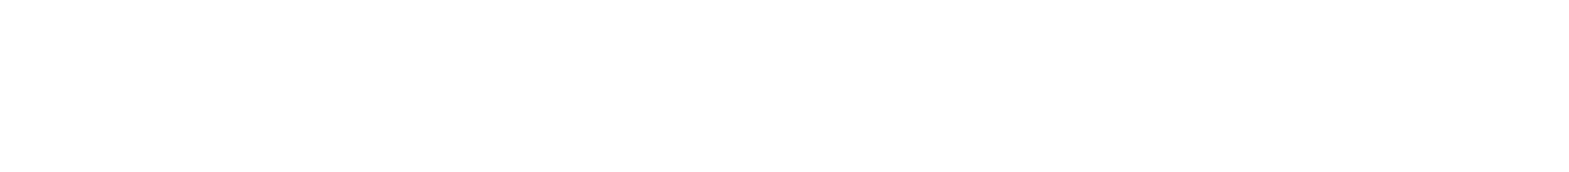 Harsco
 logo grand pour les fonds sombres (PNG transparent)